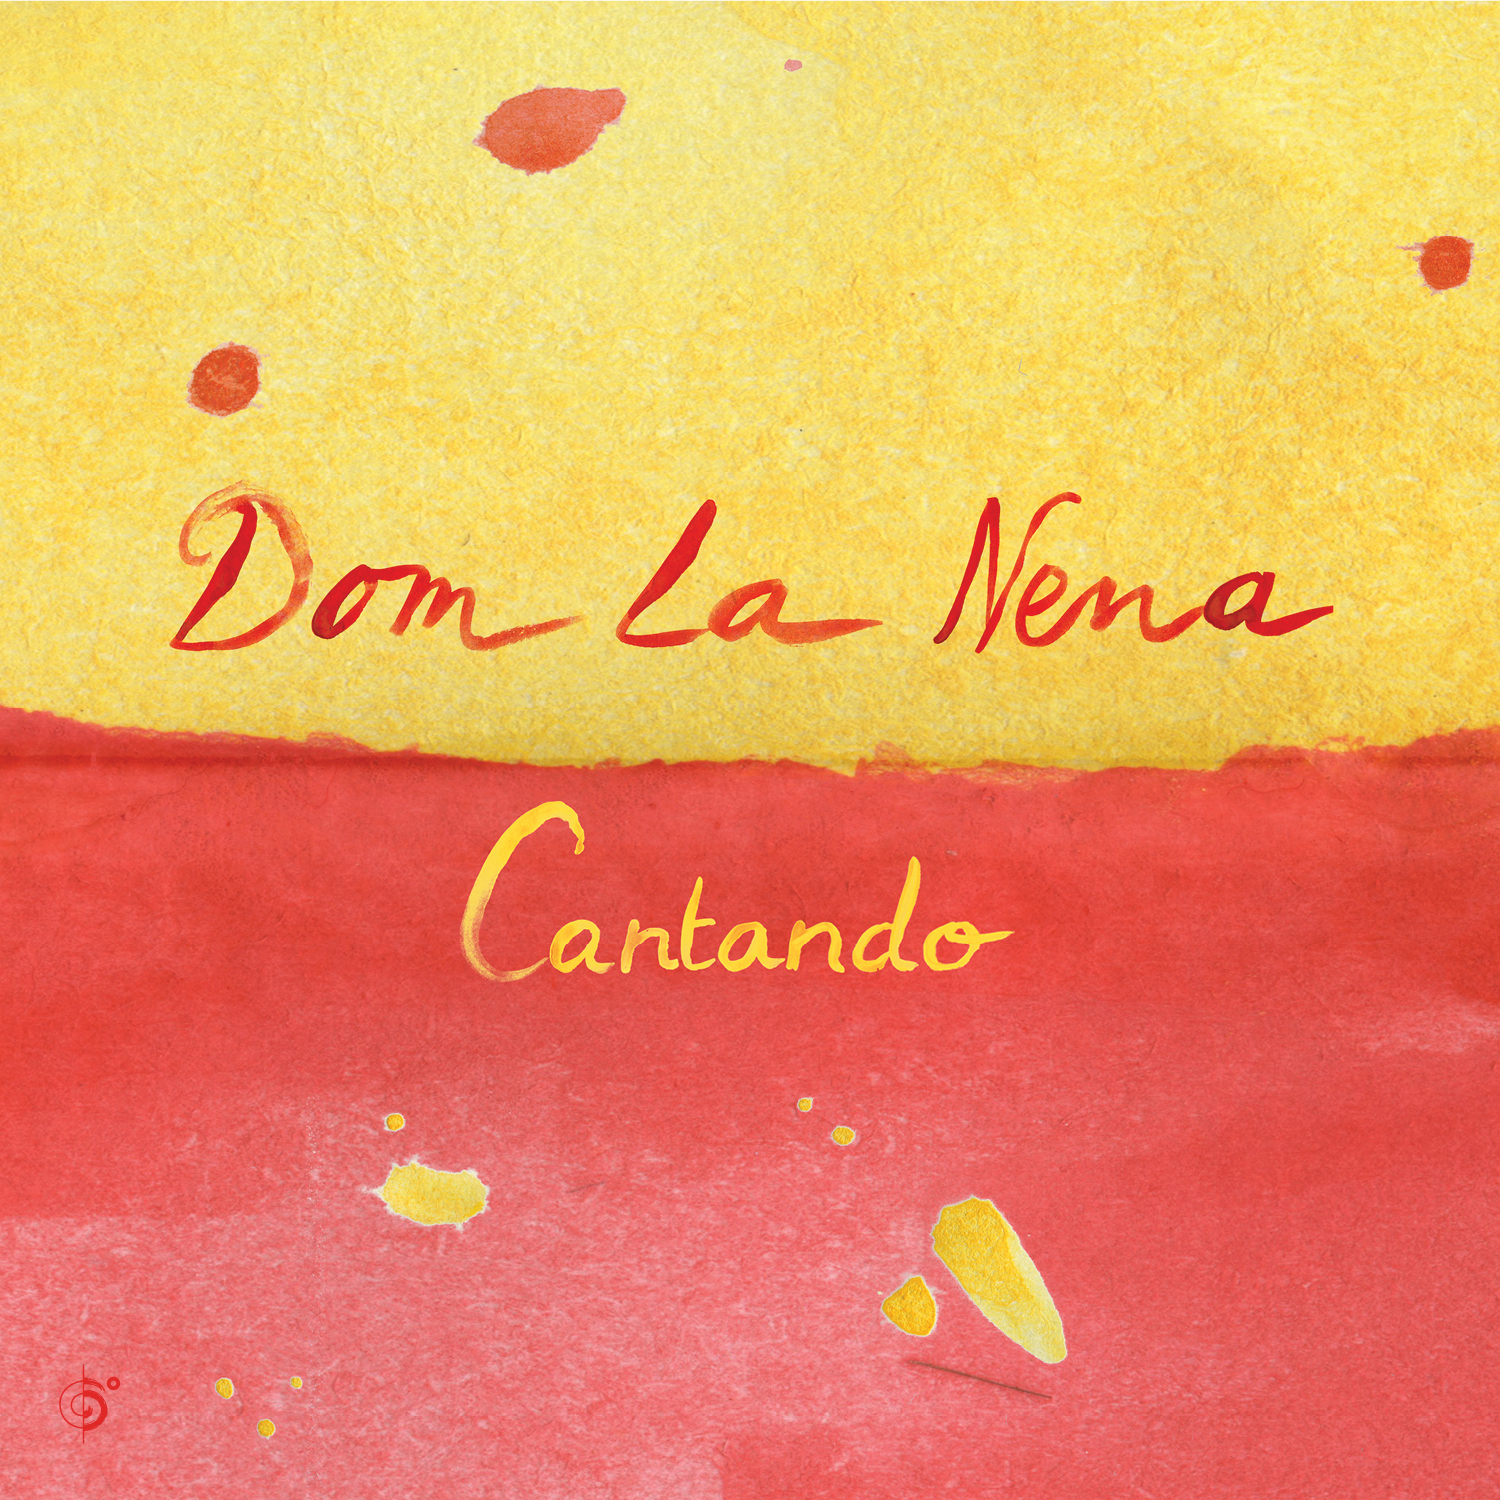 Univision premieres Dom La Nena’s “Cantando EP”